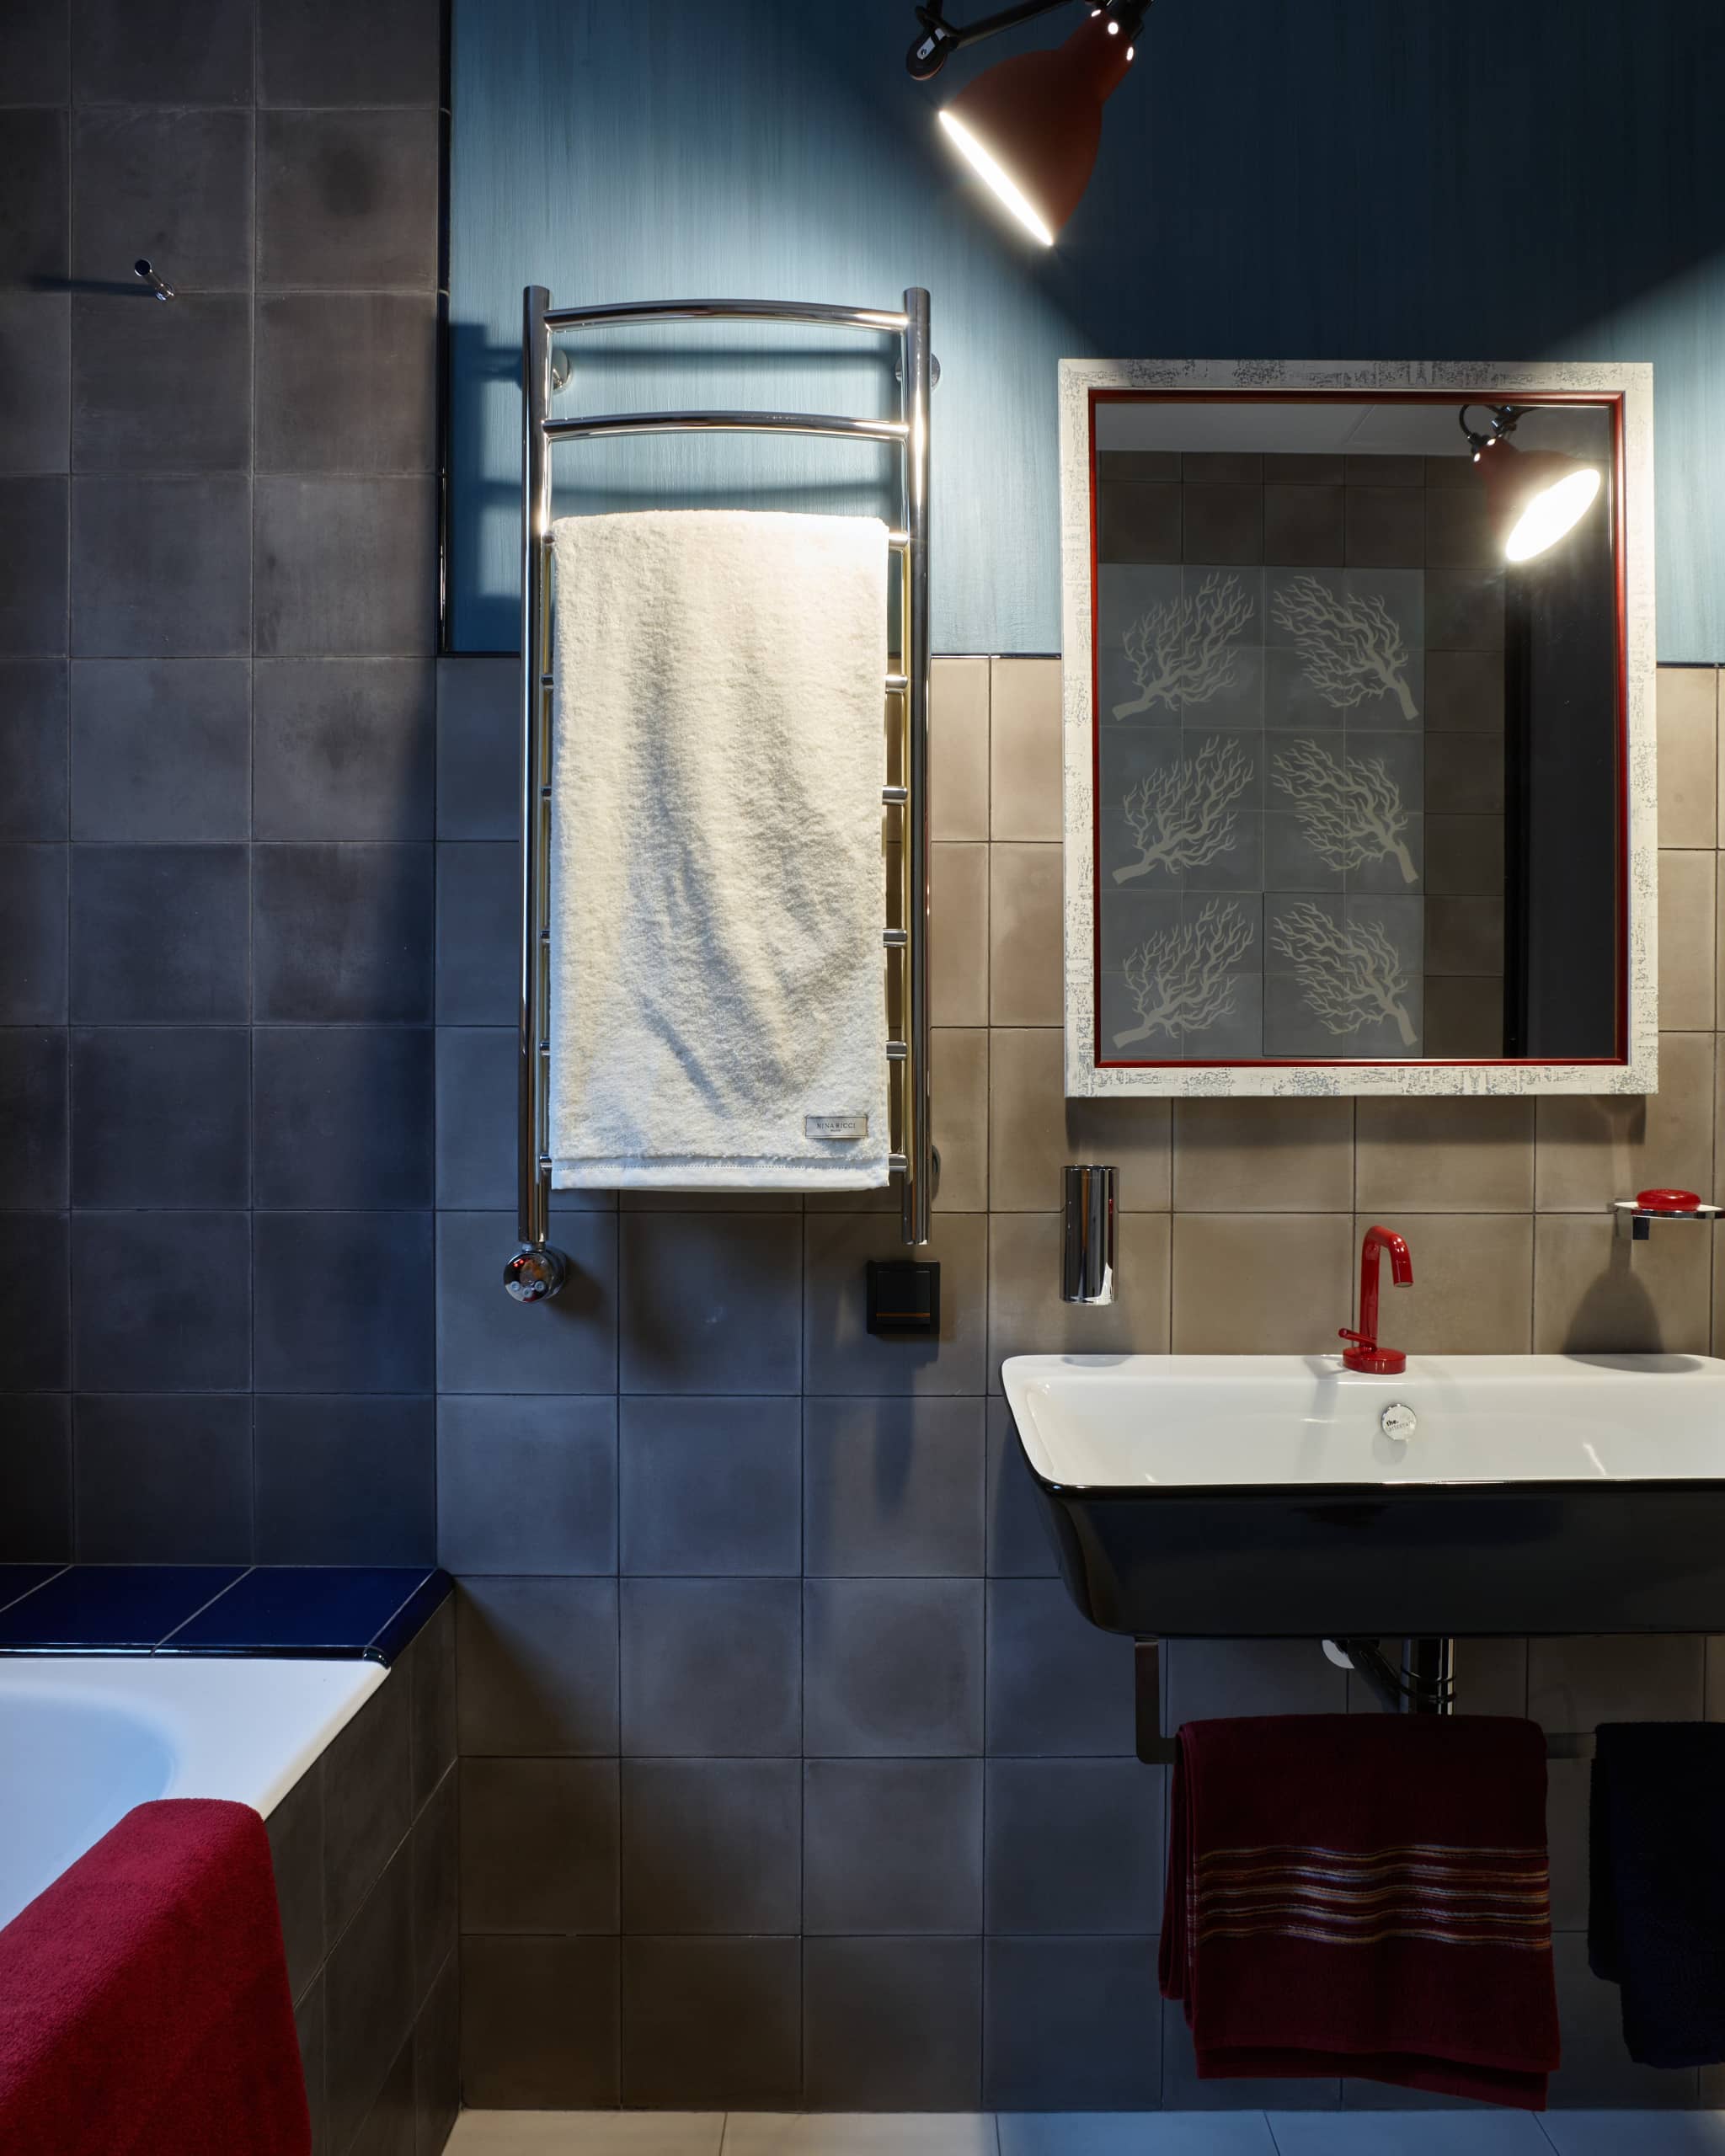 Красные украшения в ванной комнате добавляют интерьеру изысканности